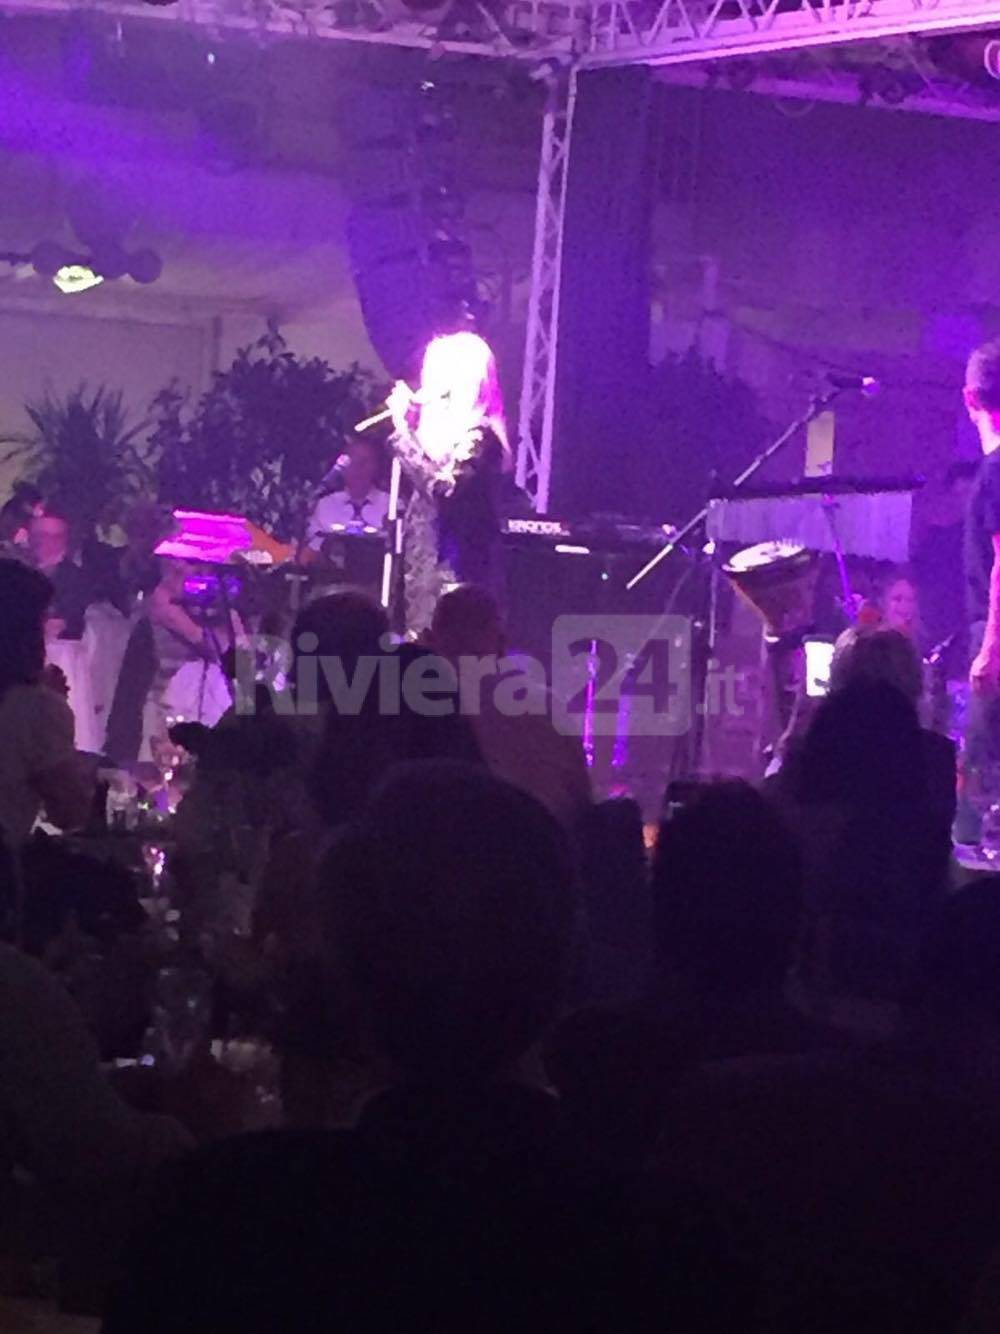 Riviera24 - Sanremo, cena al Roof Garden del Casinò per Patty Pravo